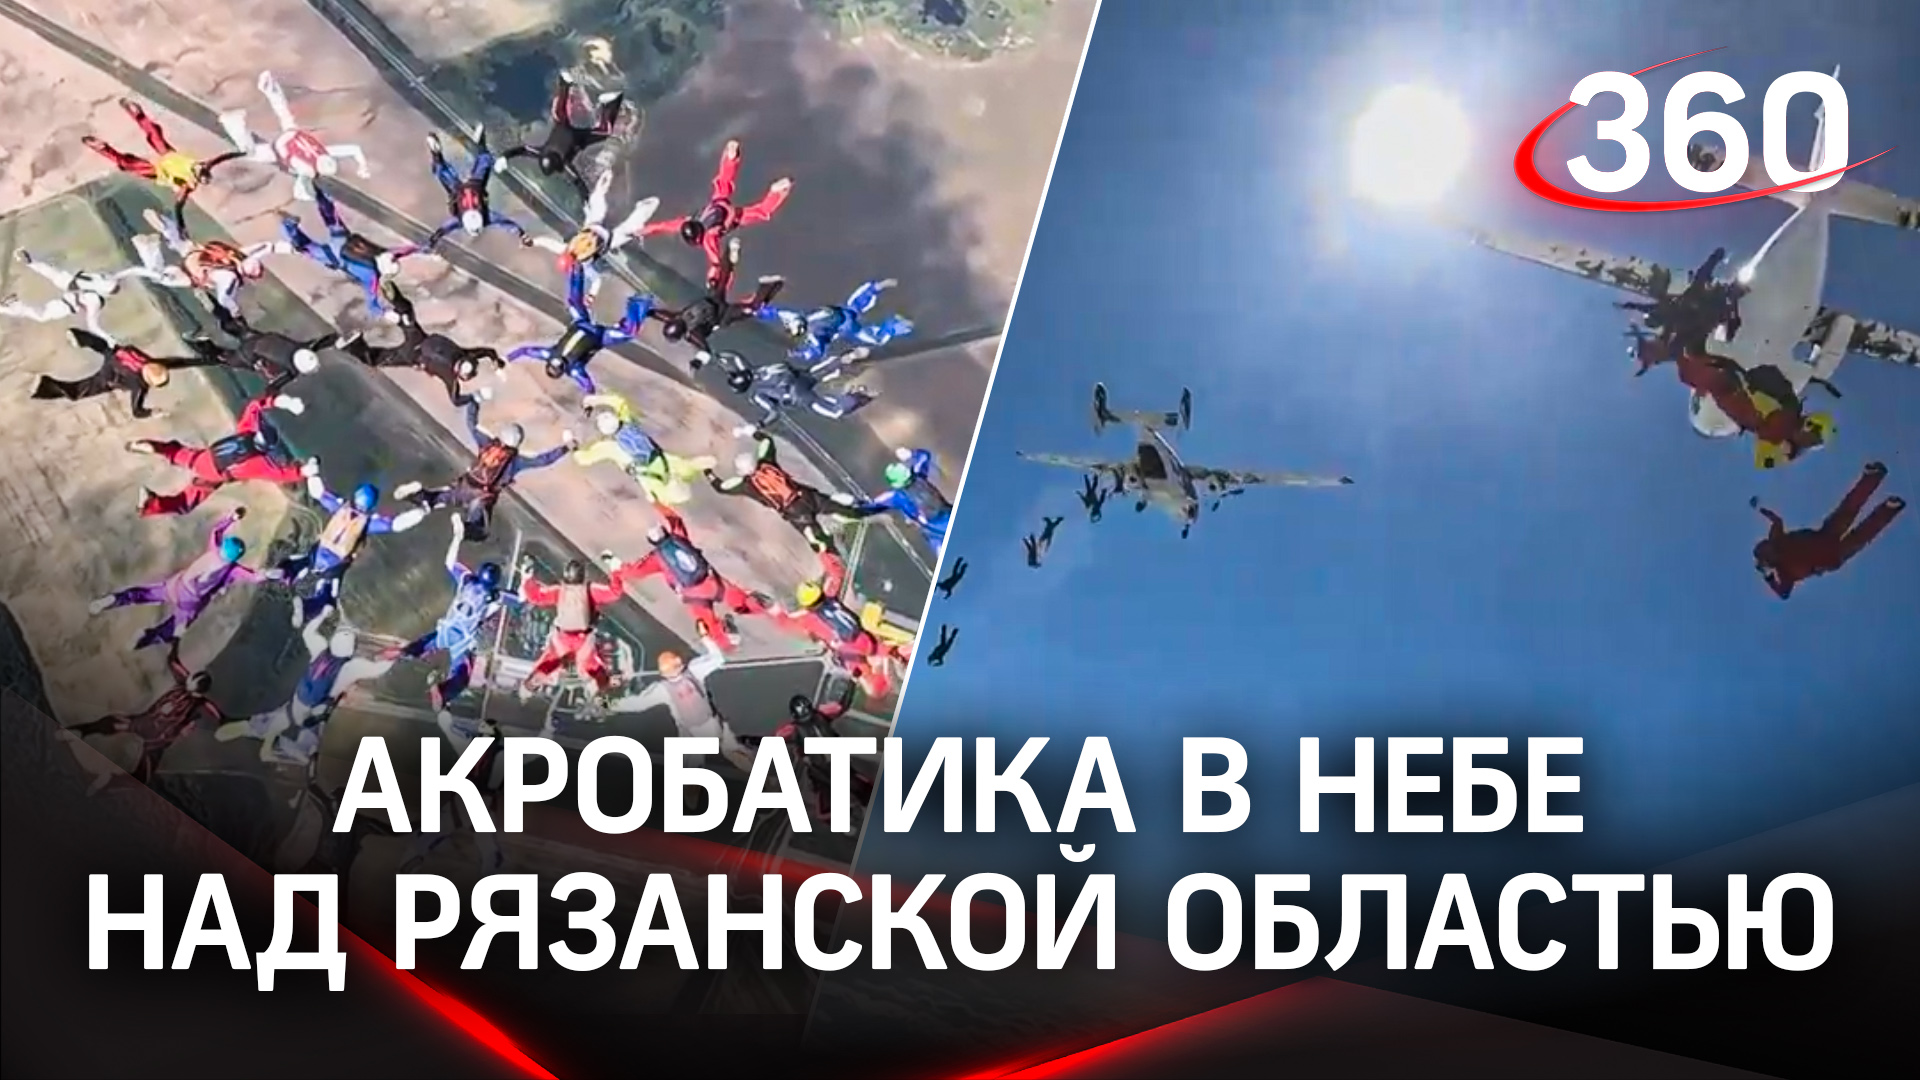 Группа парашютистов установила рекорд России по групповой акробатике в небе над Рязанской областью